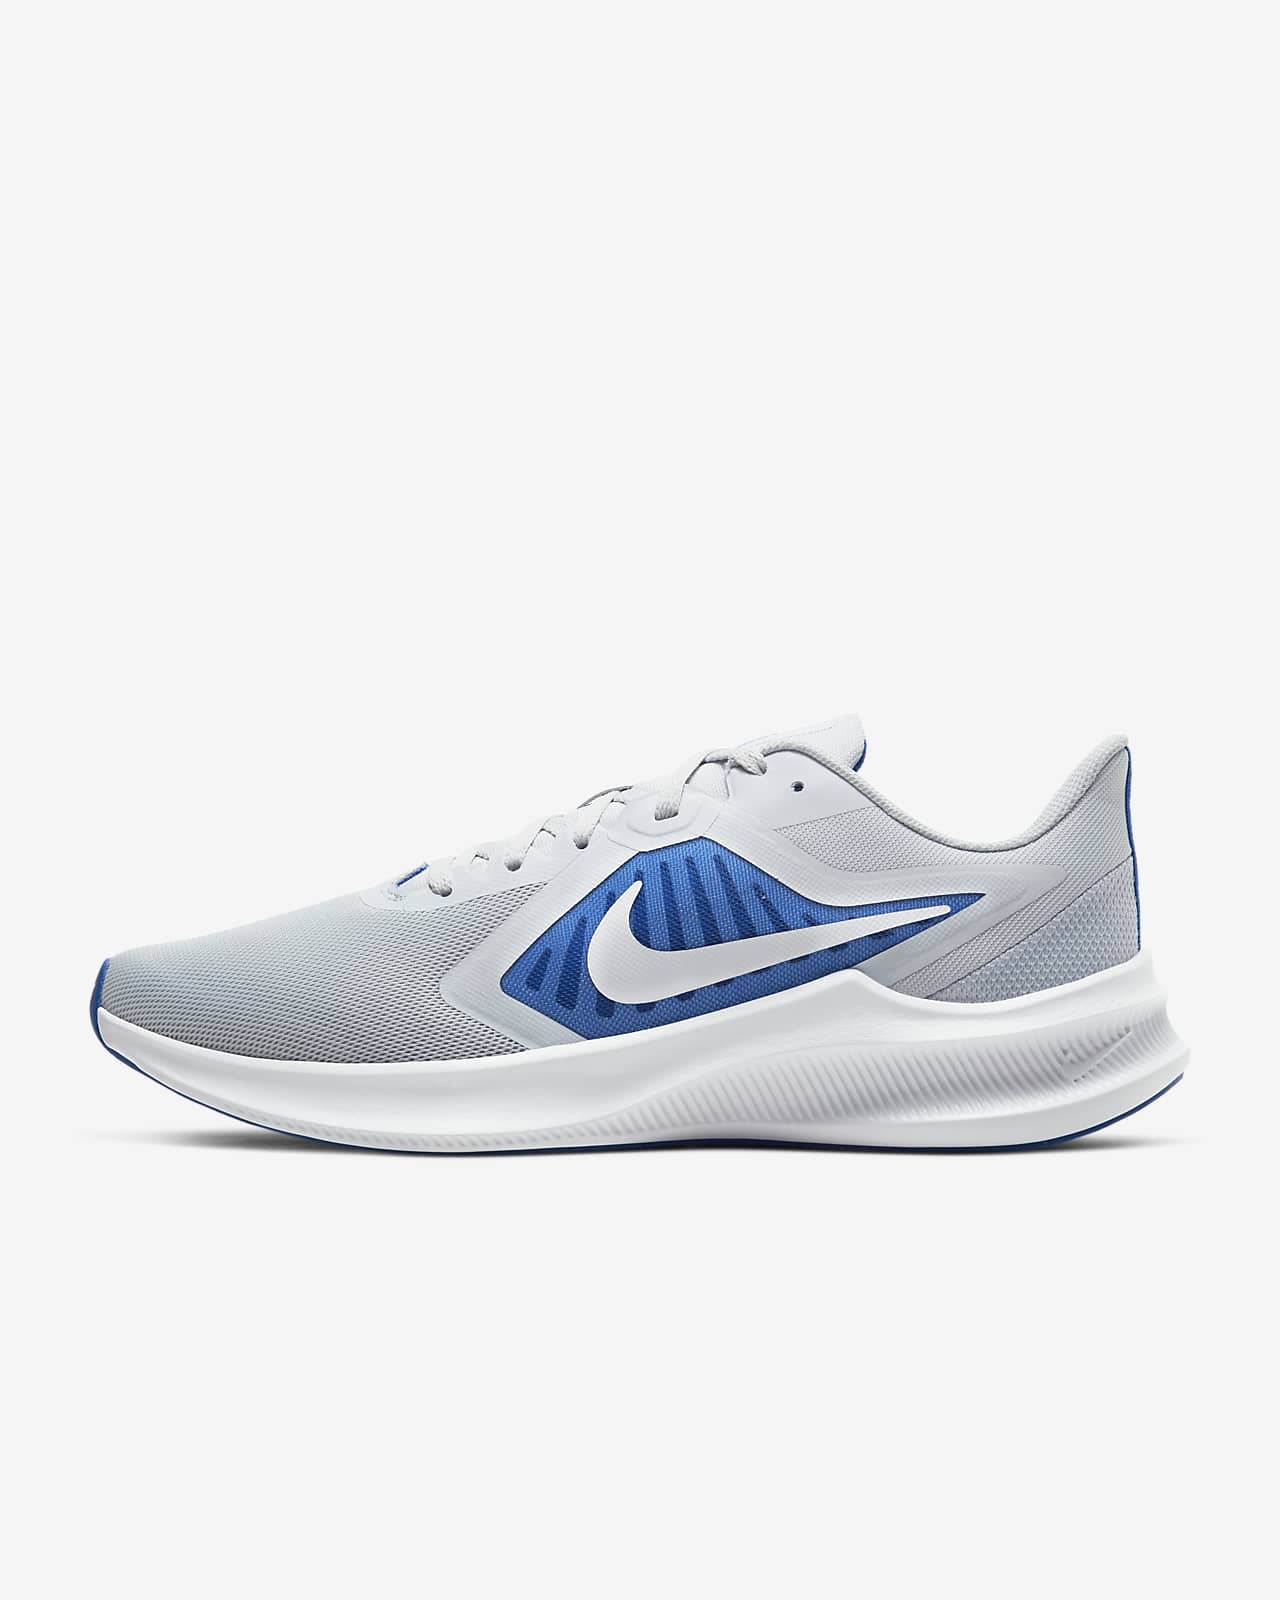 Nike Downshifter 10 Men's Running Shoe 